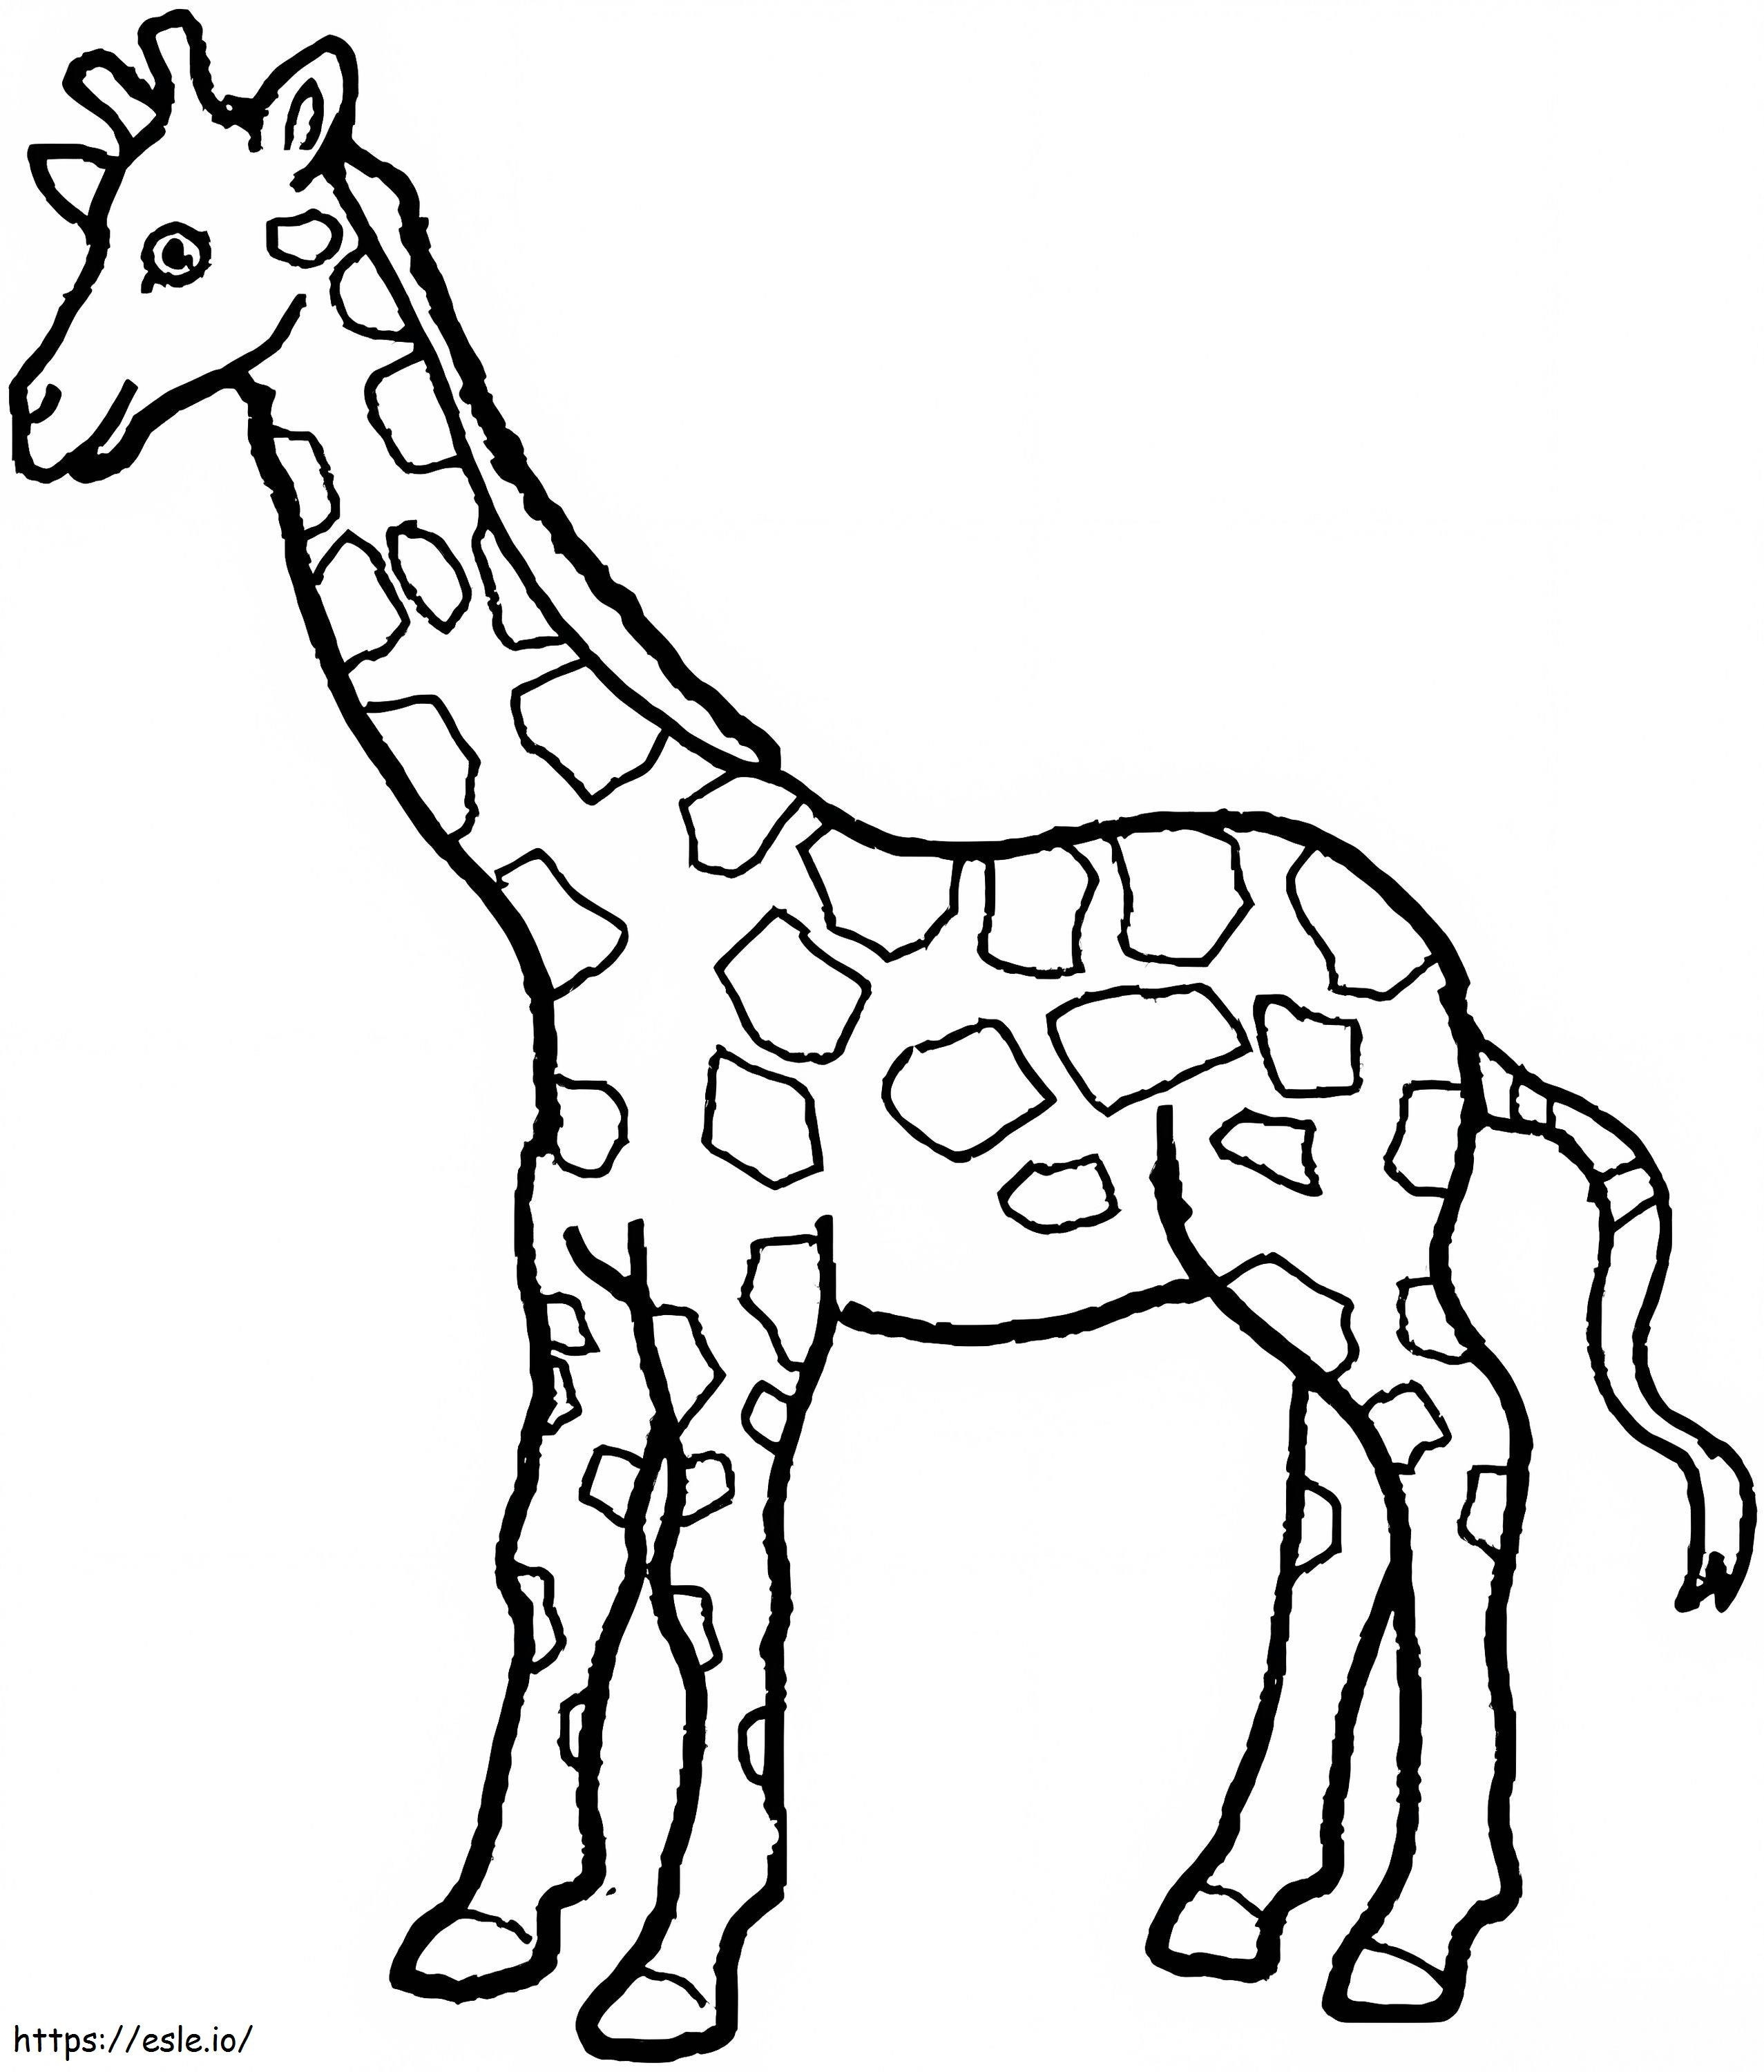 Giraffenzeichnung ausmalbilder